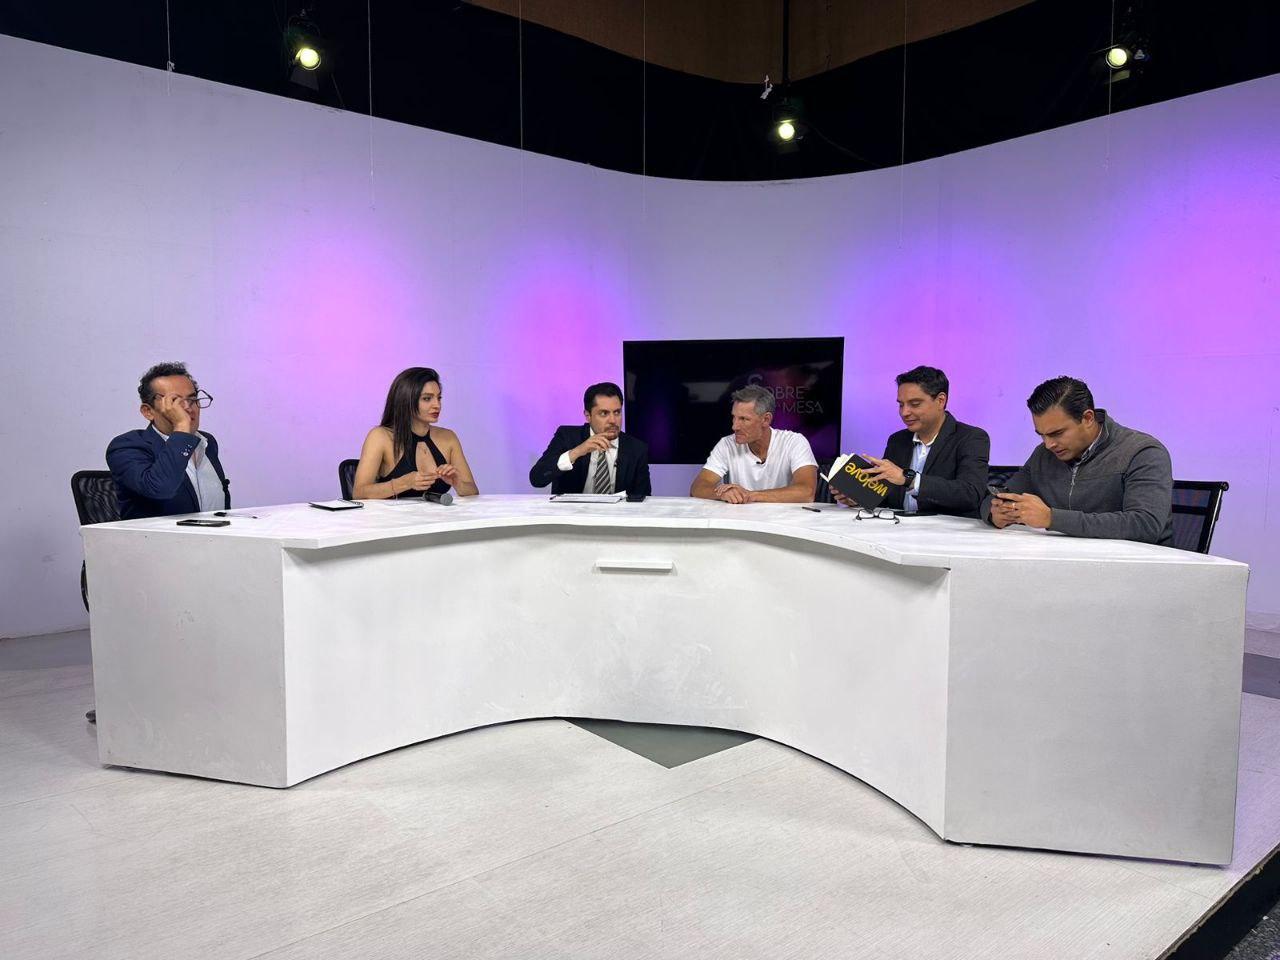 Serie de especiales televisivos que celebran el orgullo hidalguense. En una apuesta por resaltar la riqueza cultural, deportiva y gastronómica hidalguense, Radio y Televisión de Hidalgo